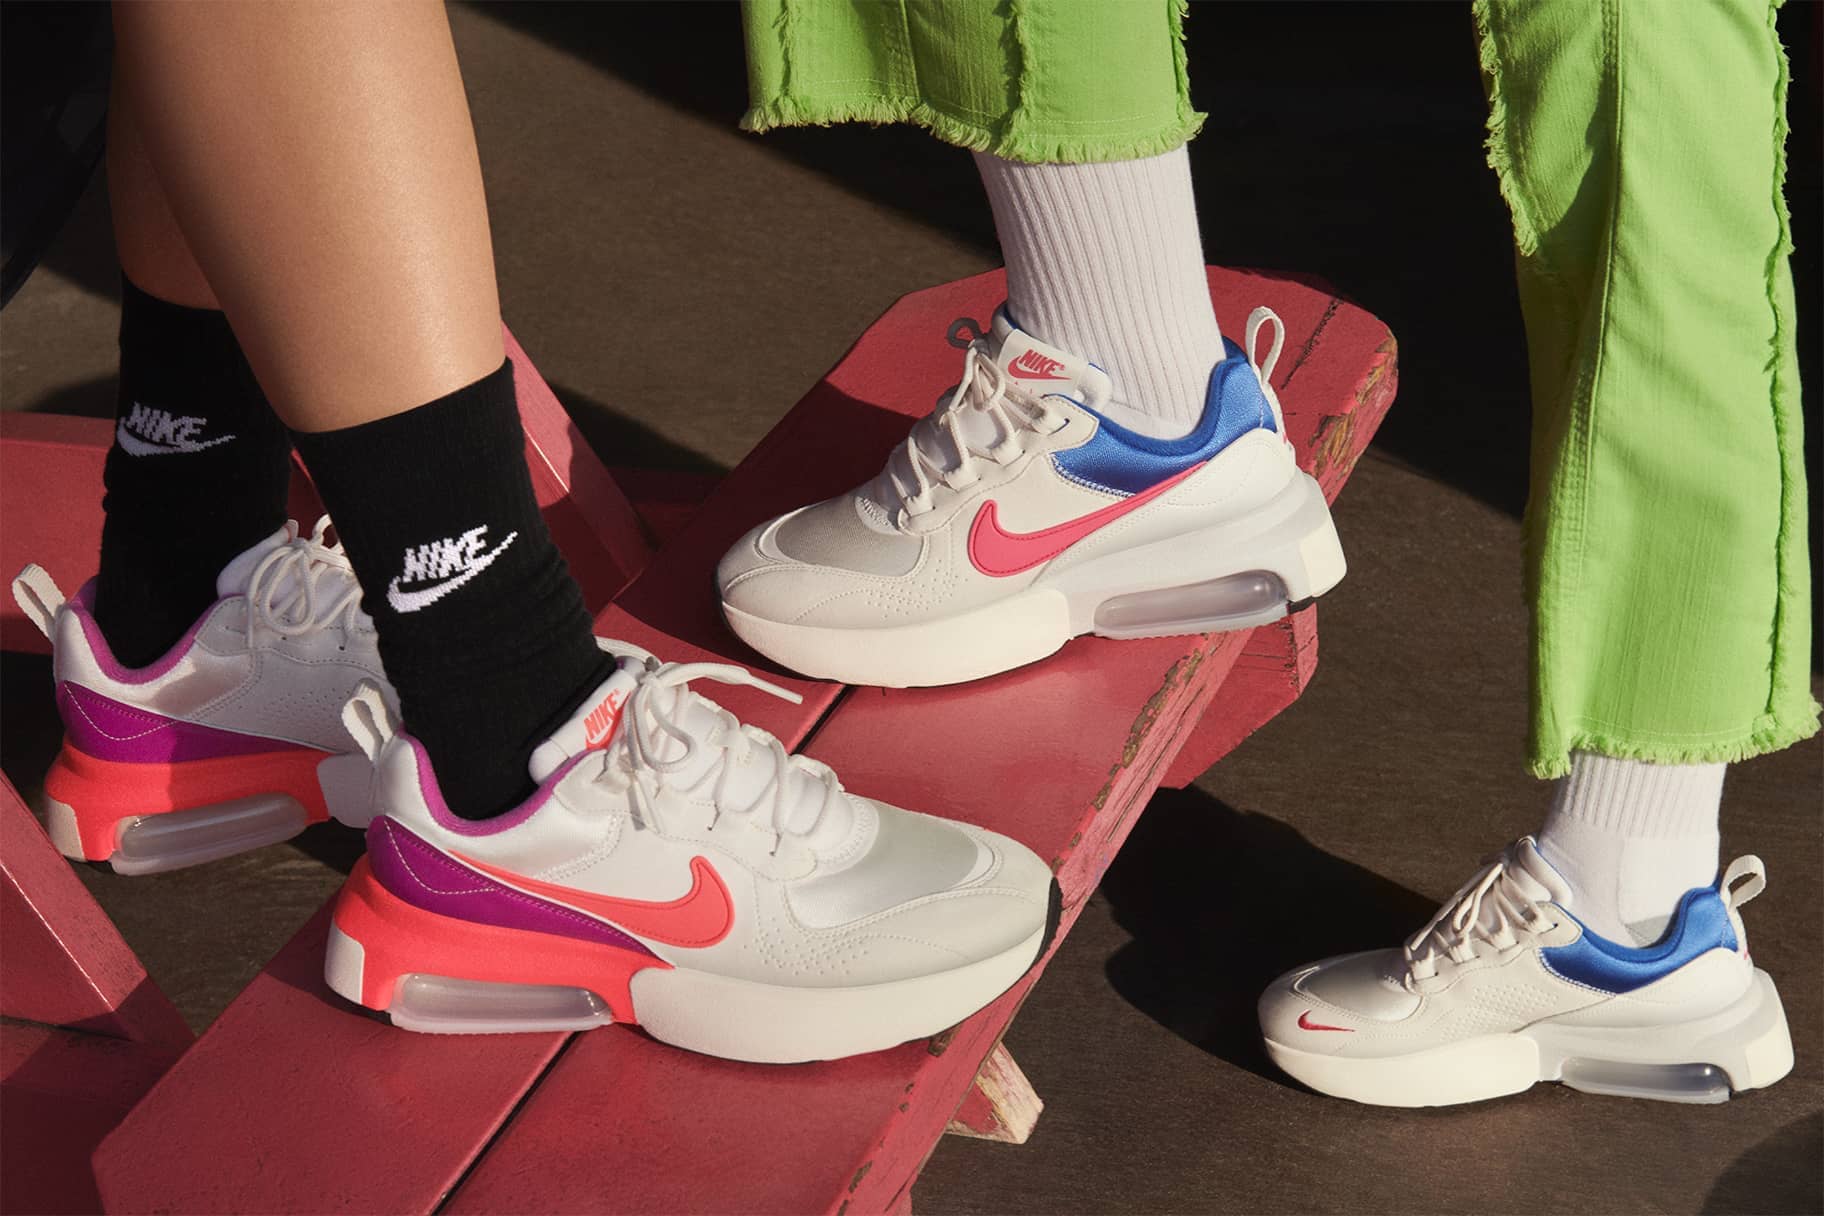 amateur verkenner luisteraar Nike's beste casual schoenen voor dagelijks draagplezier. Nike BE